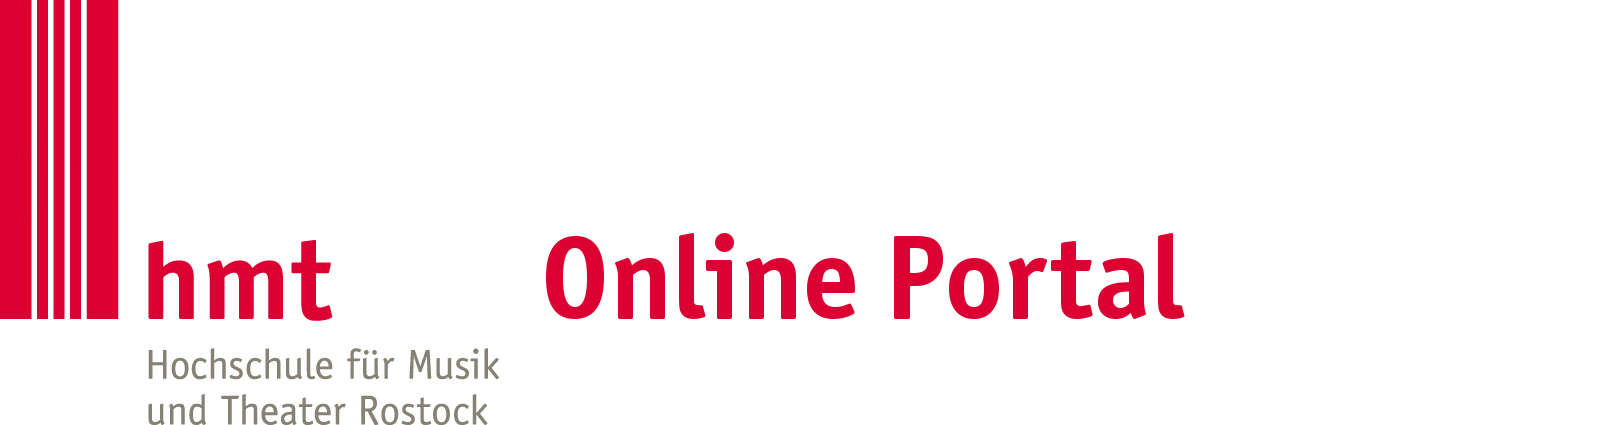 Online Portal der Hochschule für Musik und Theater Rostock